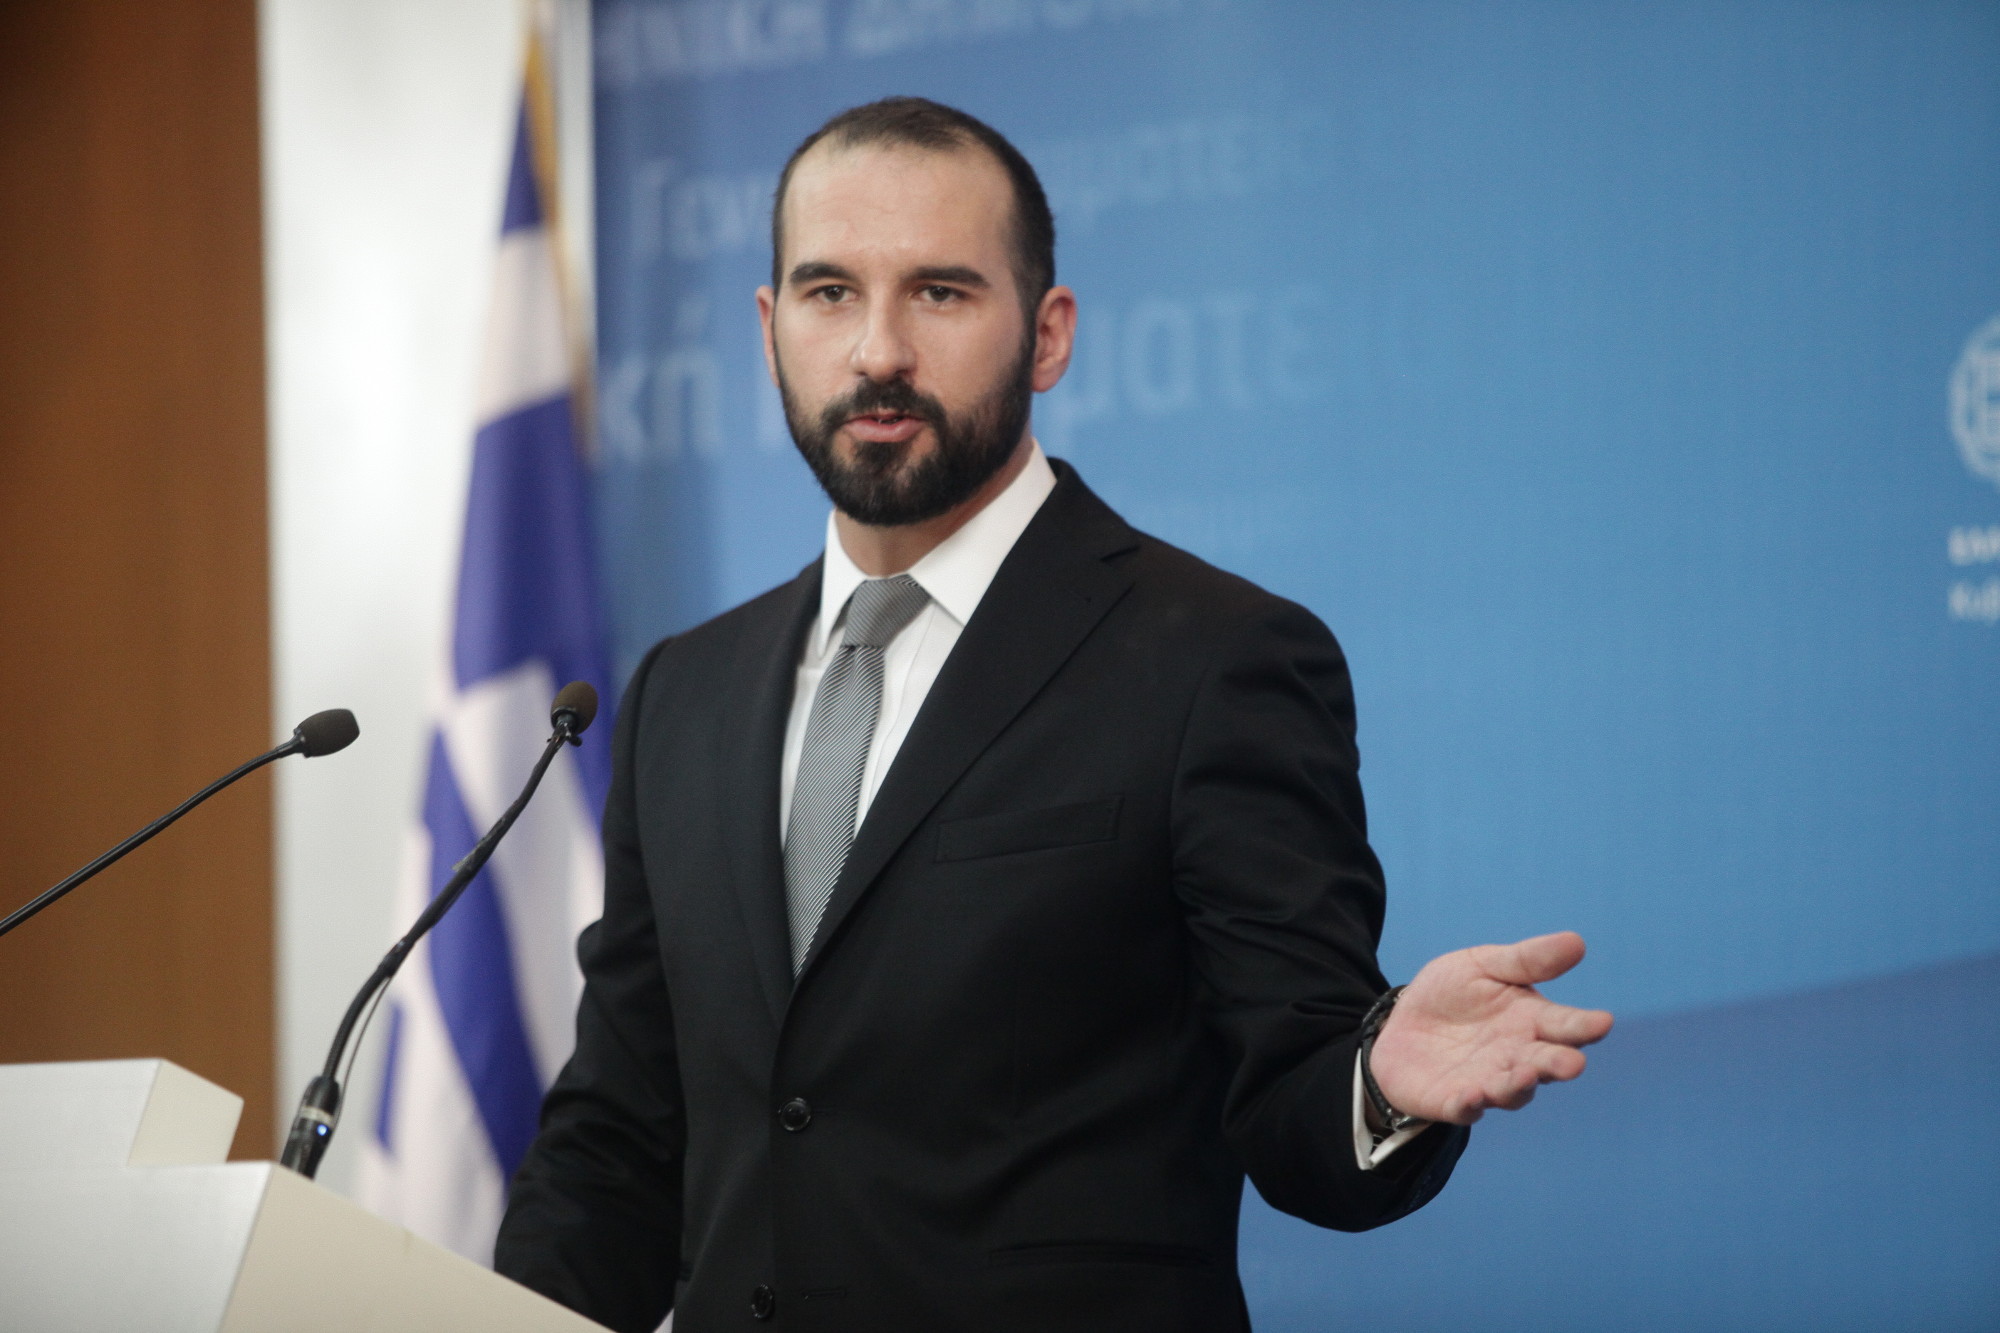 Τζανακόπουλος: Επιτυχή ολοκλήρωση της 4ης αξιολόγησης για έξοδο από το πρόγραμμα εντός Ιουνίου (βίντεο)